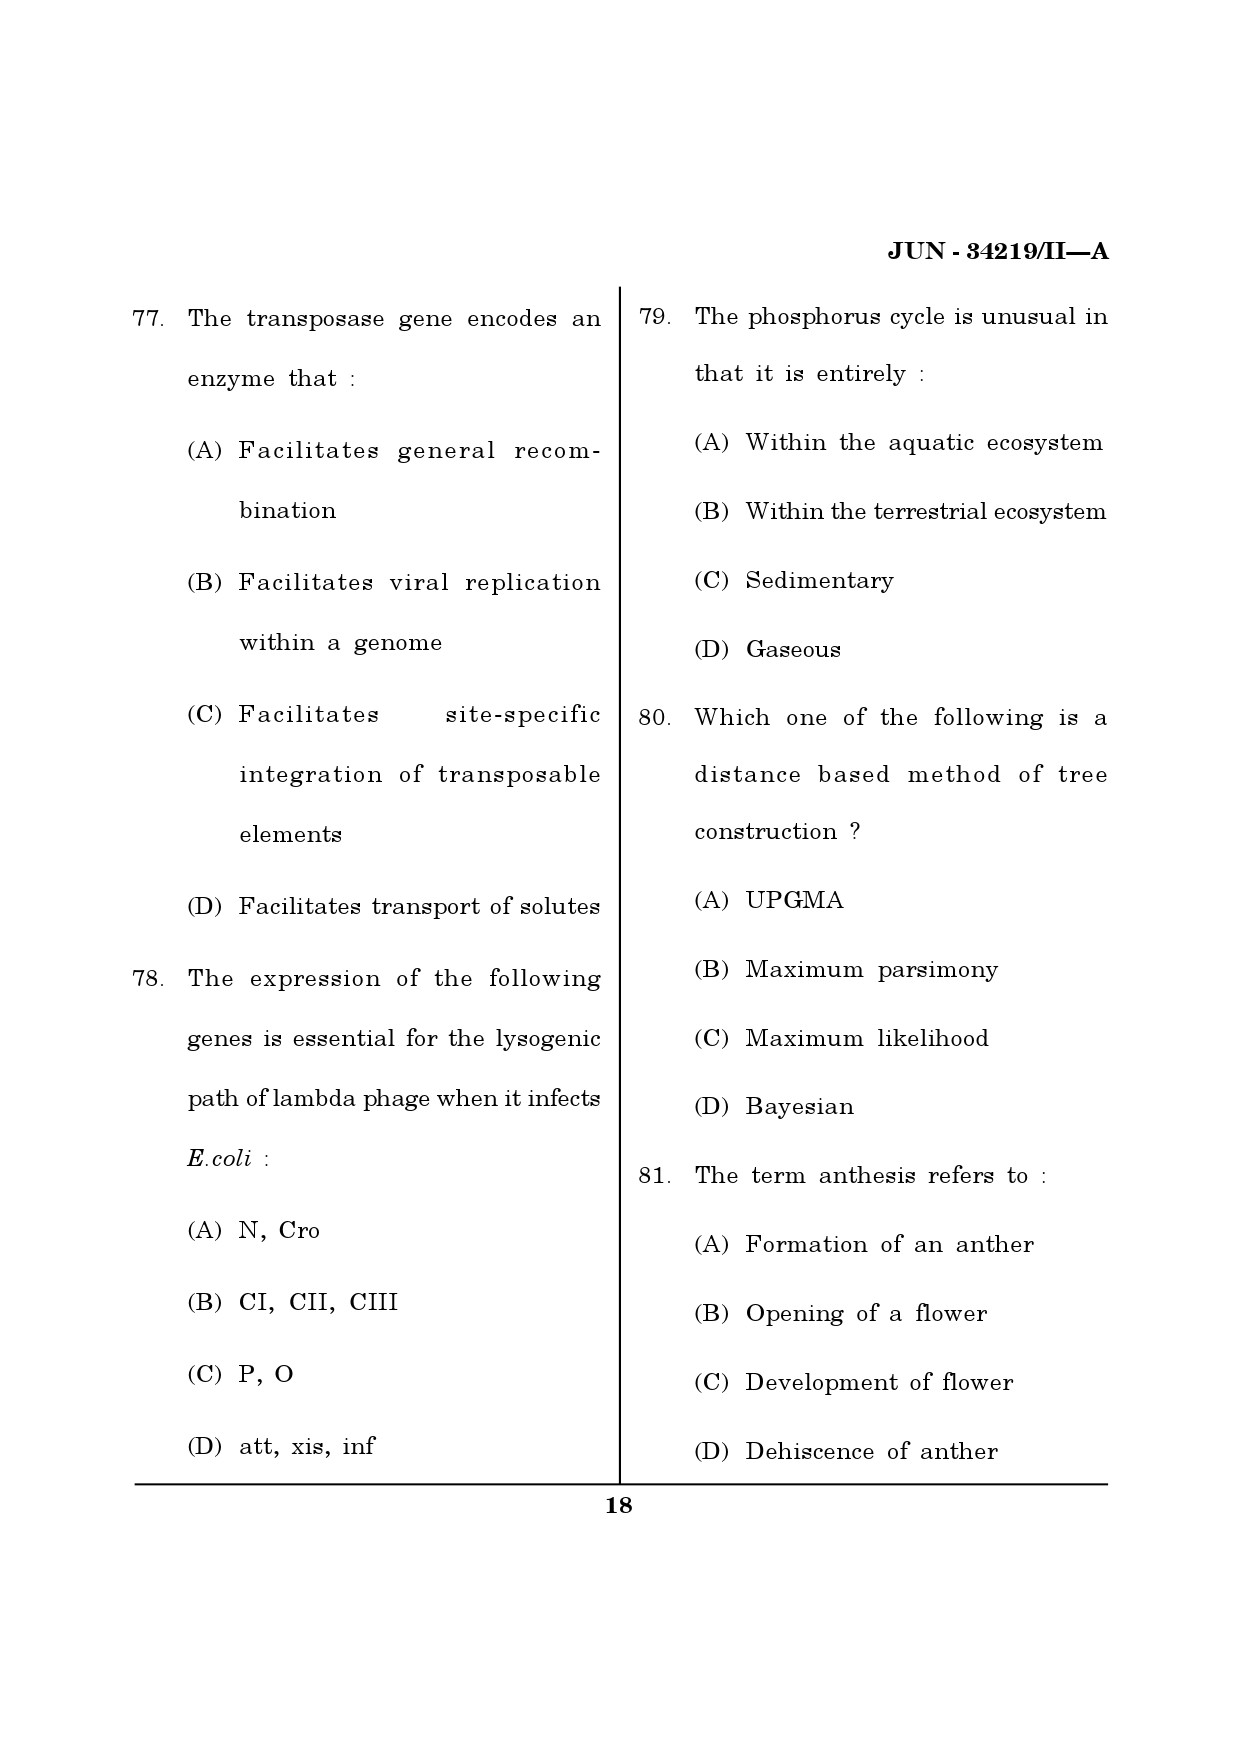 Maharashtra SET Life Sciences Question Paper II June 2019 17